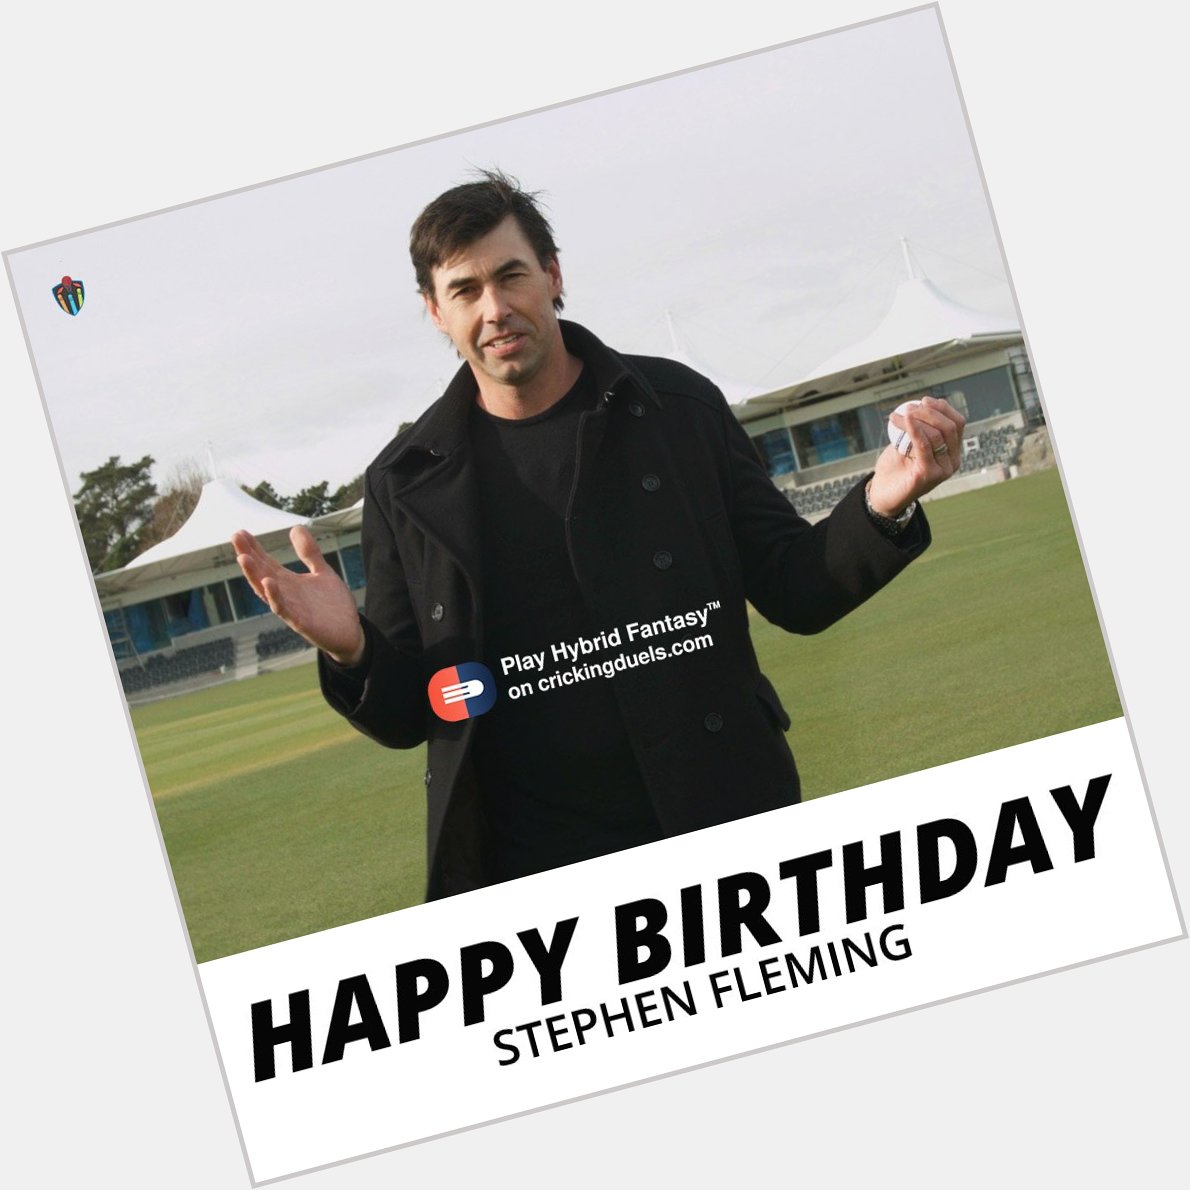 Happy birthday, Stephen Fleming 